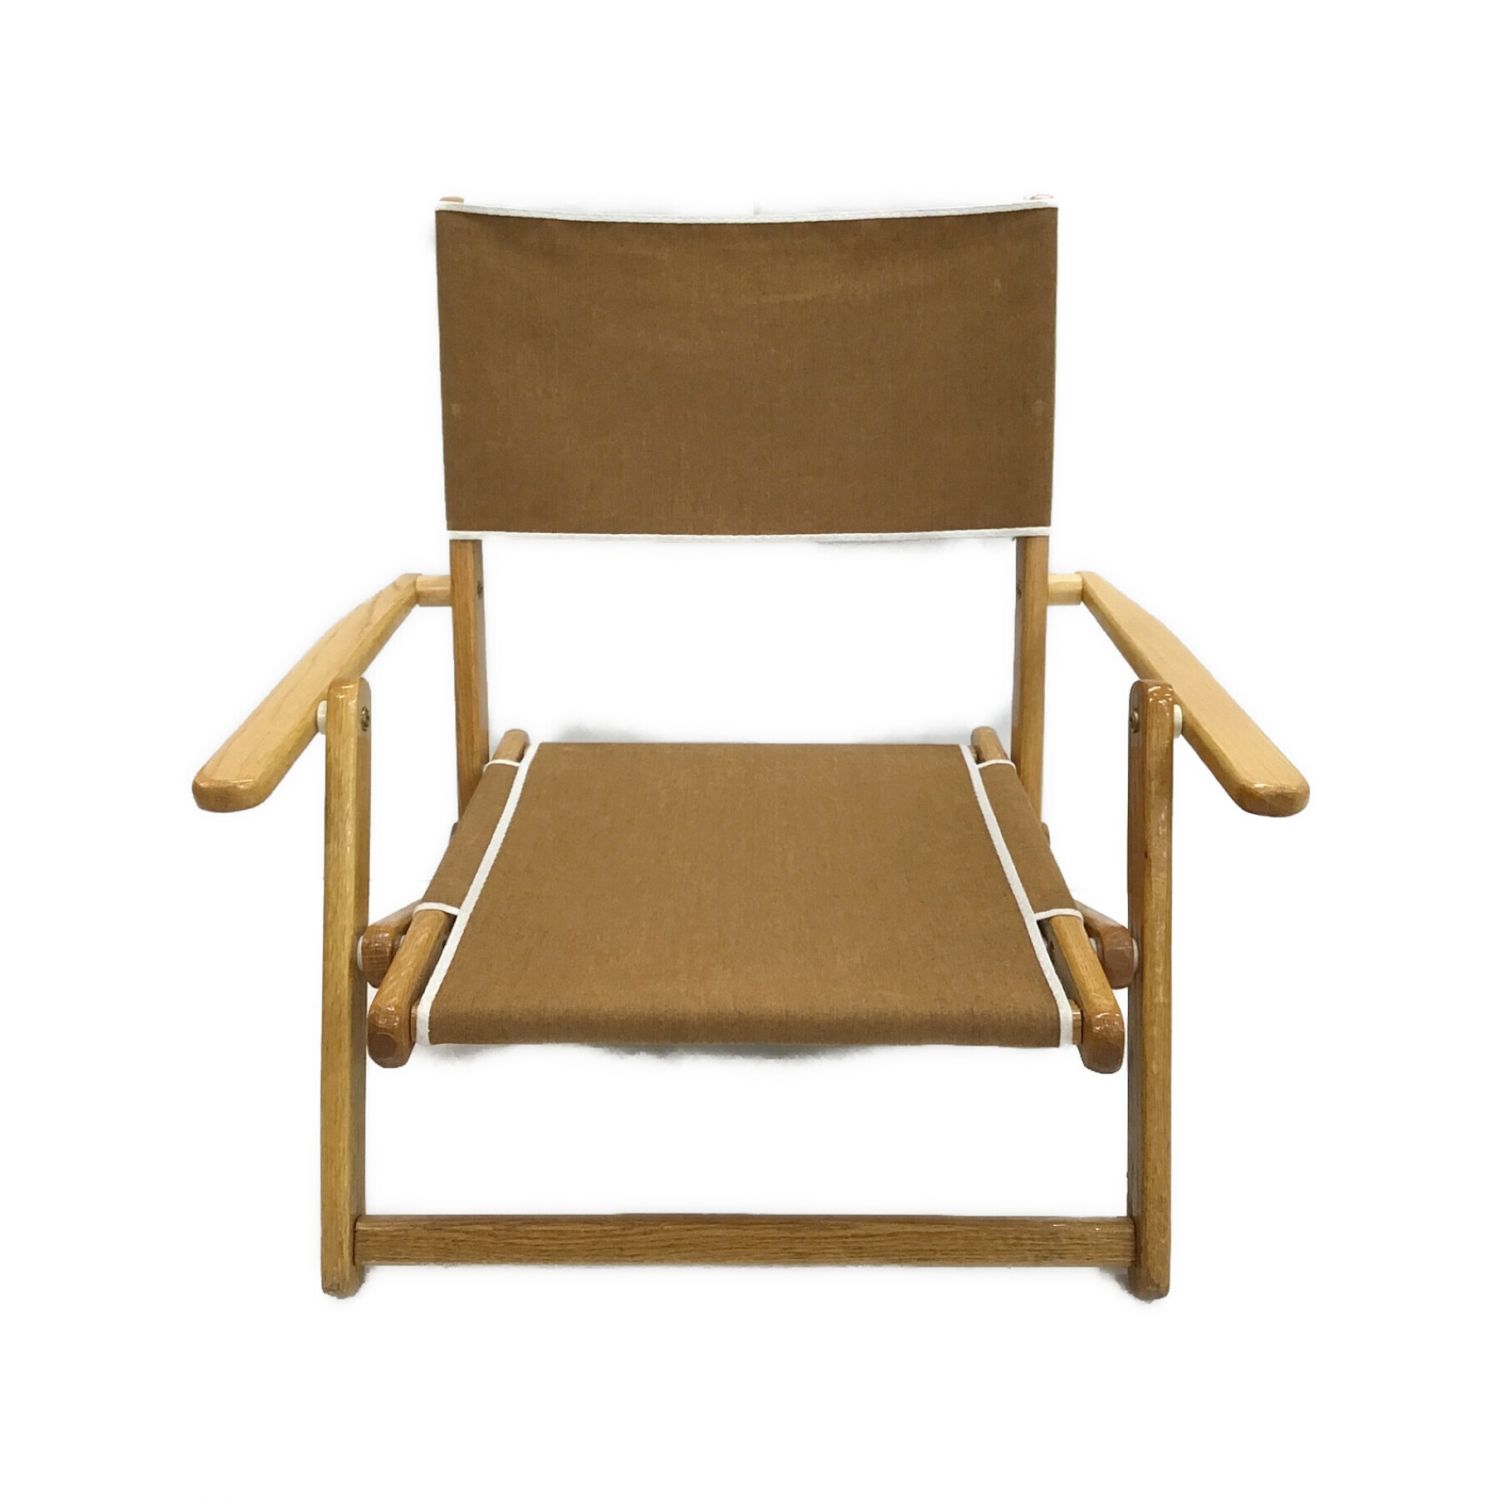 H&T chair co アウトドアチェア タン USA製 ロースタイル ミニサンド 